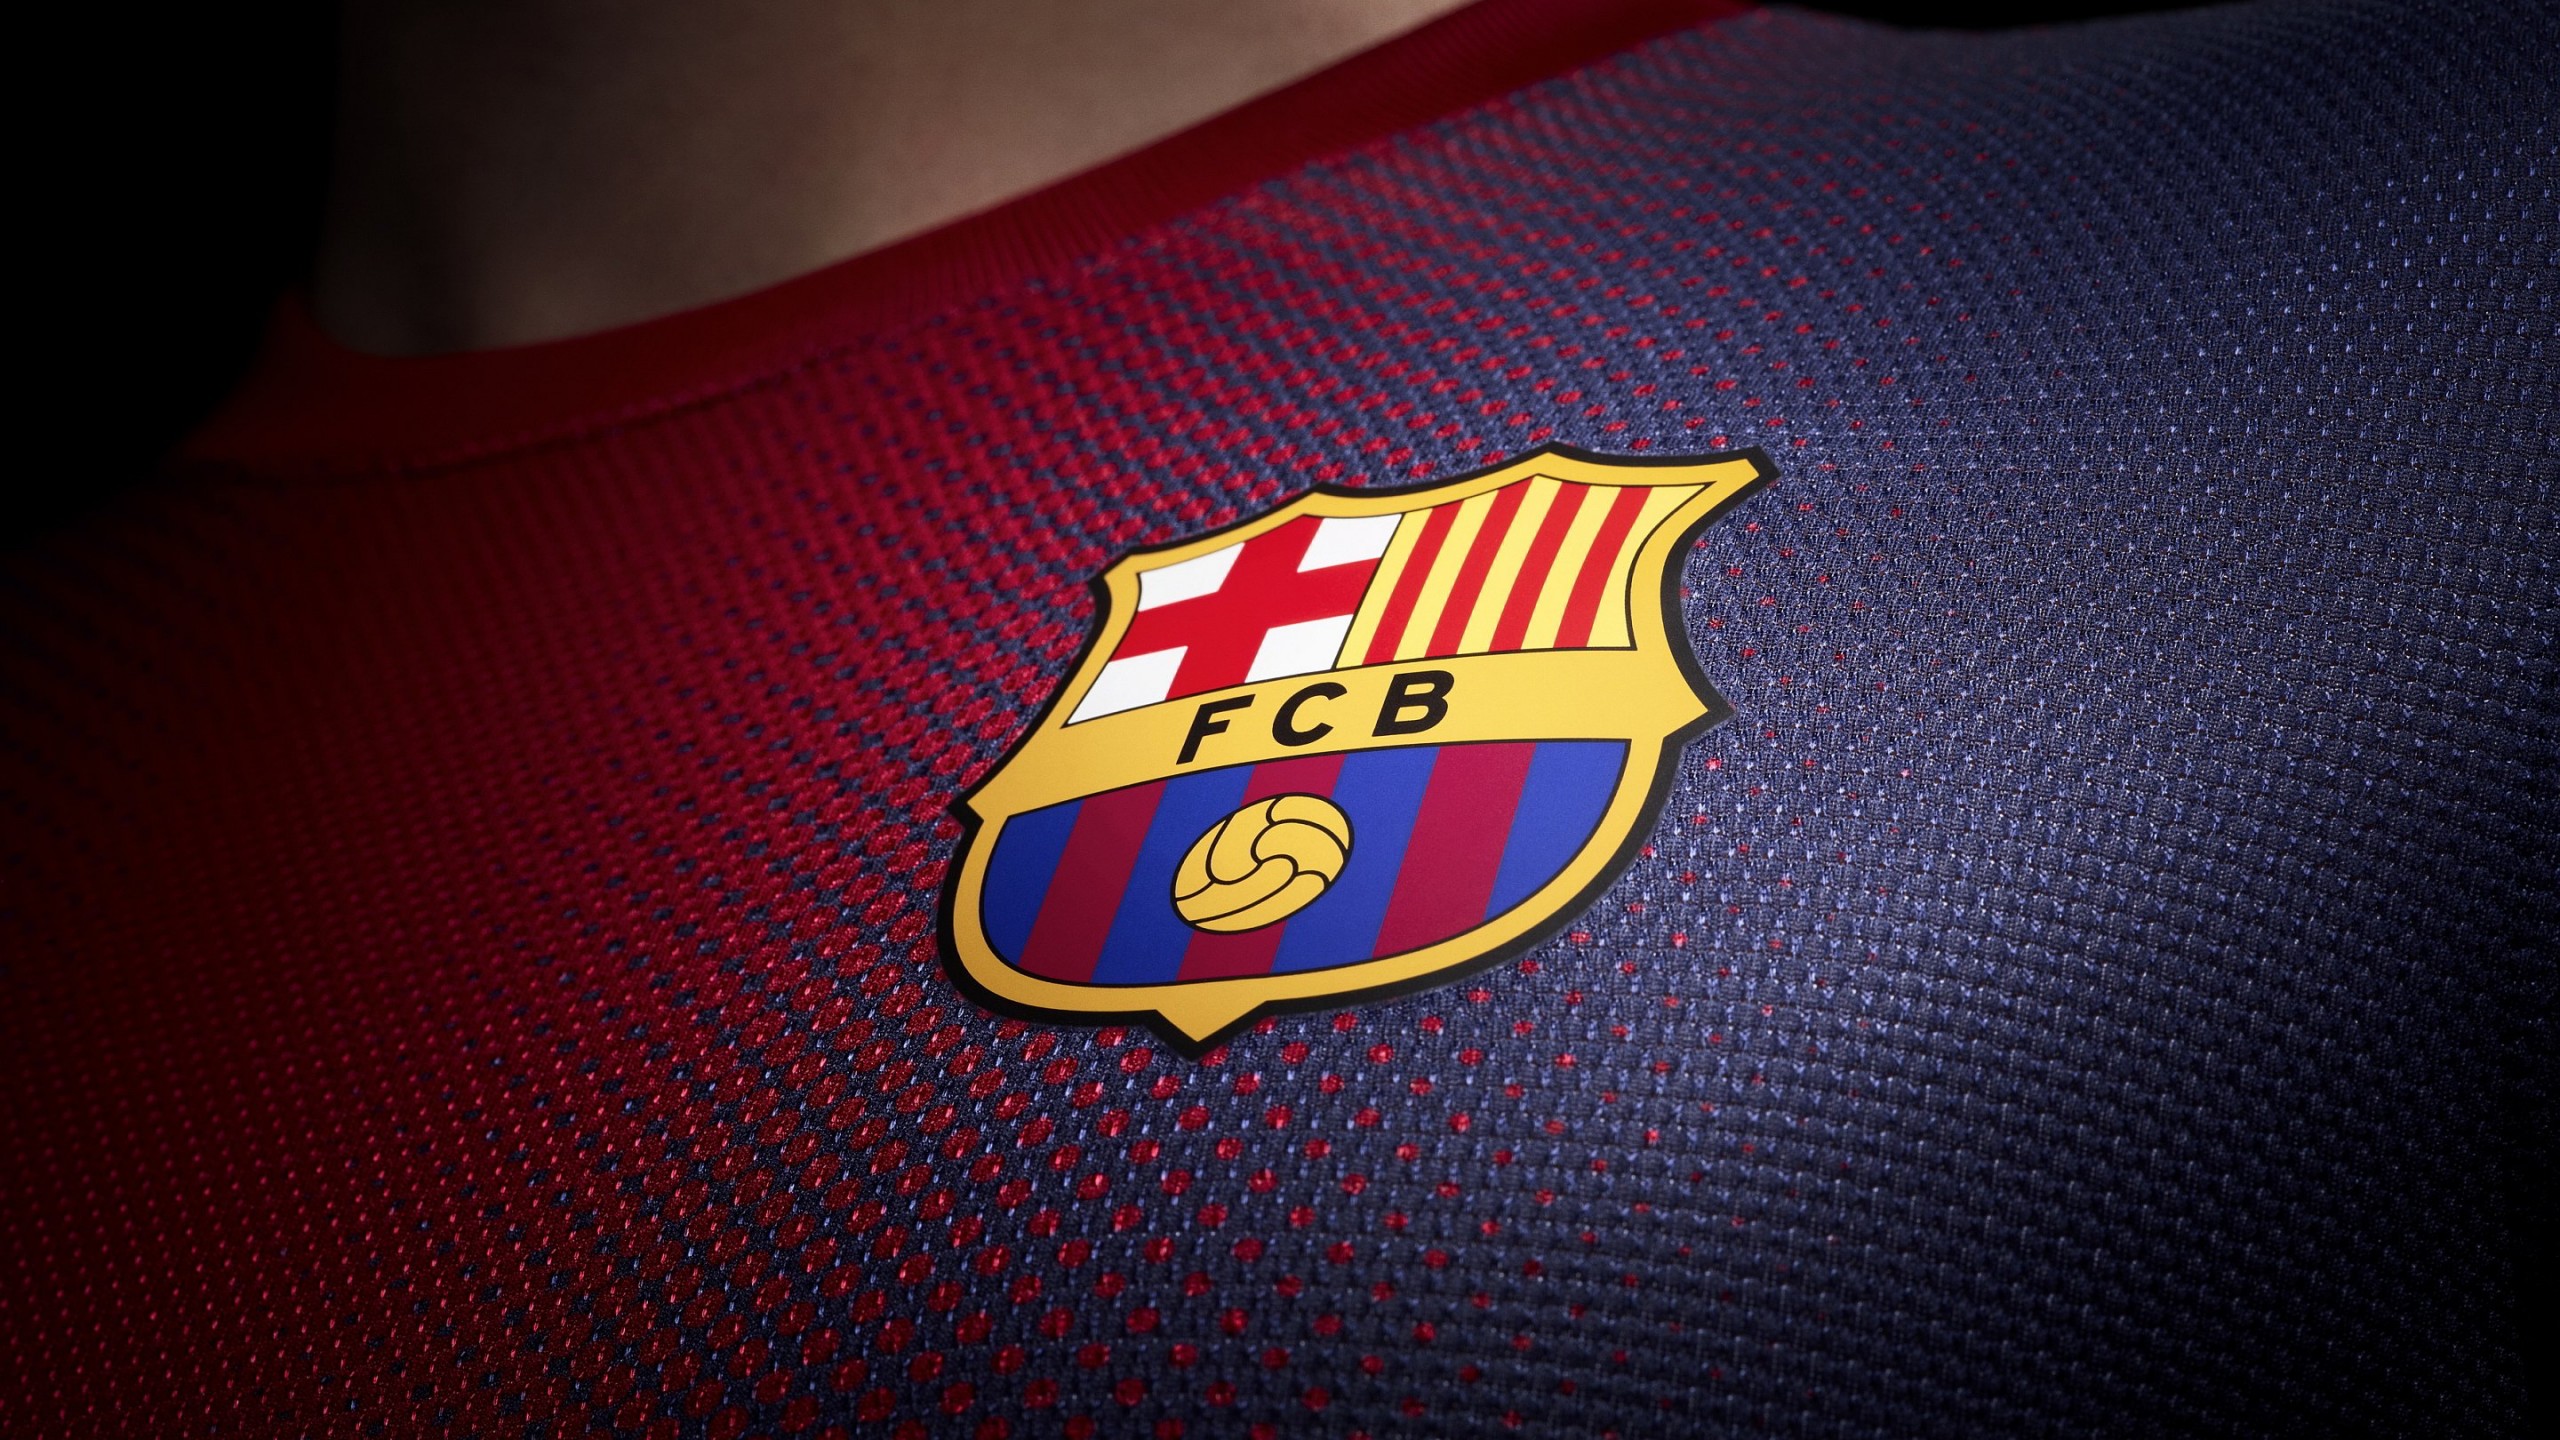 FC Barcelona Logo Shirt Wallpaper for Social Media YouTube Channel Art